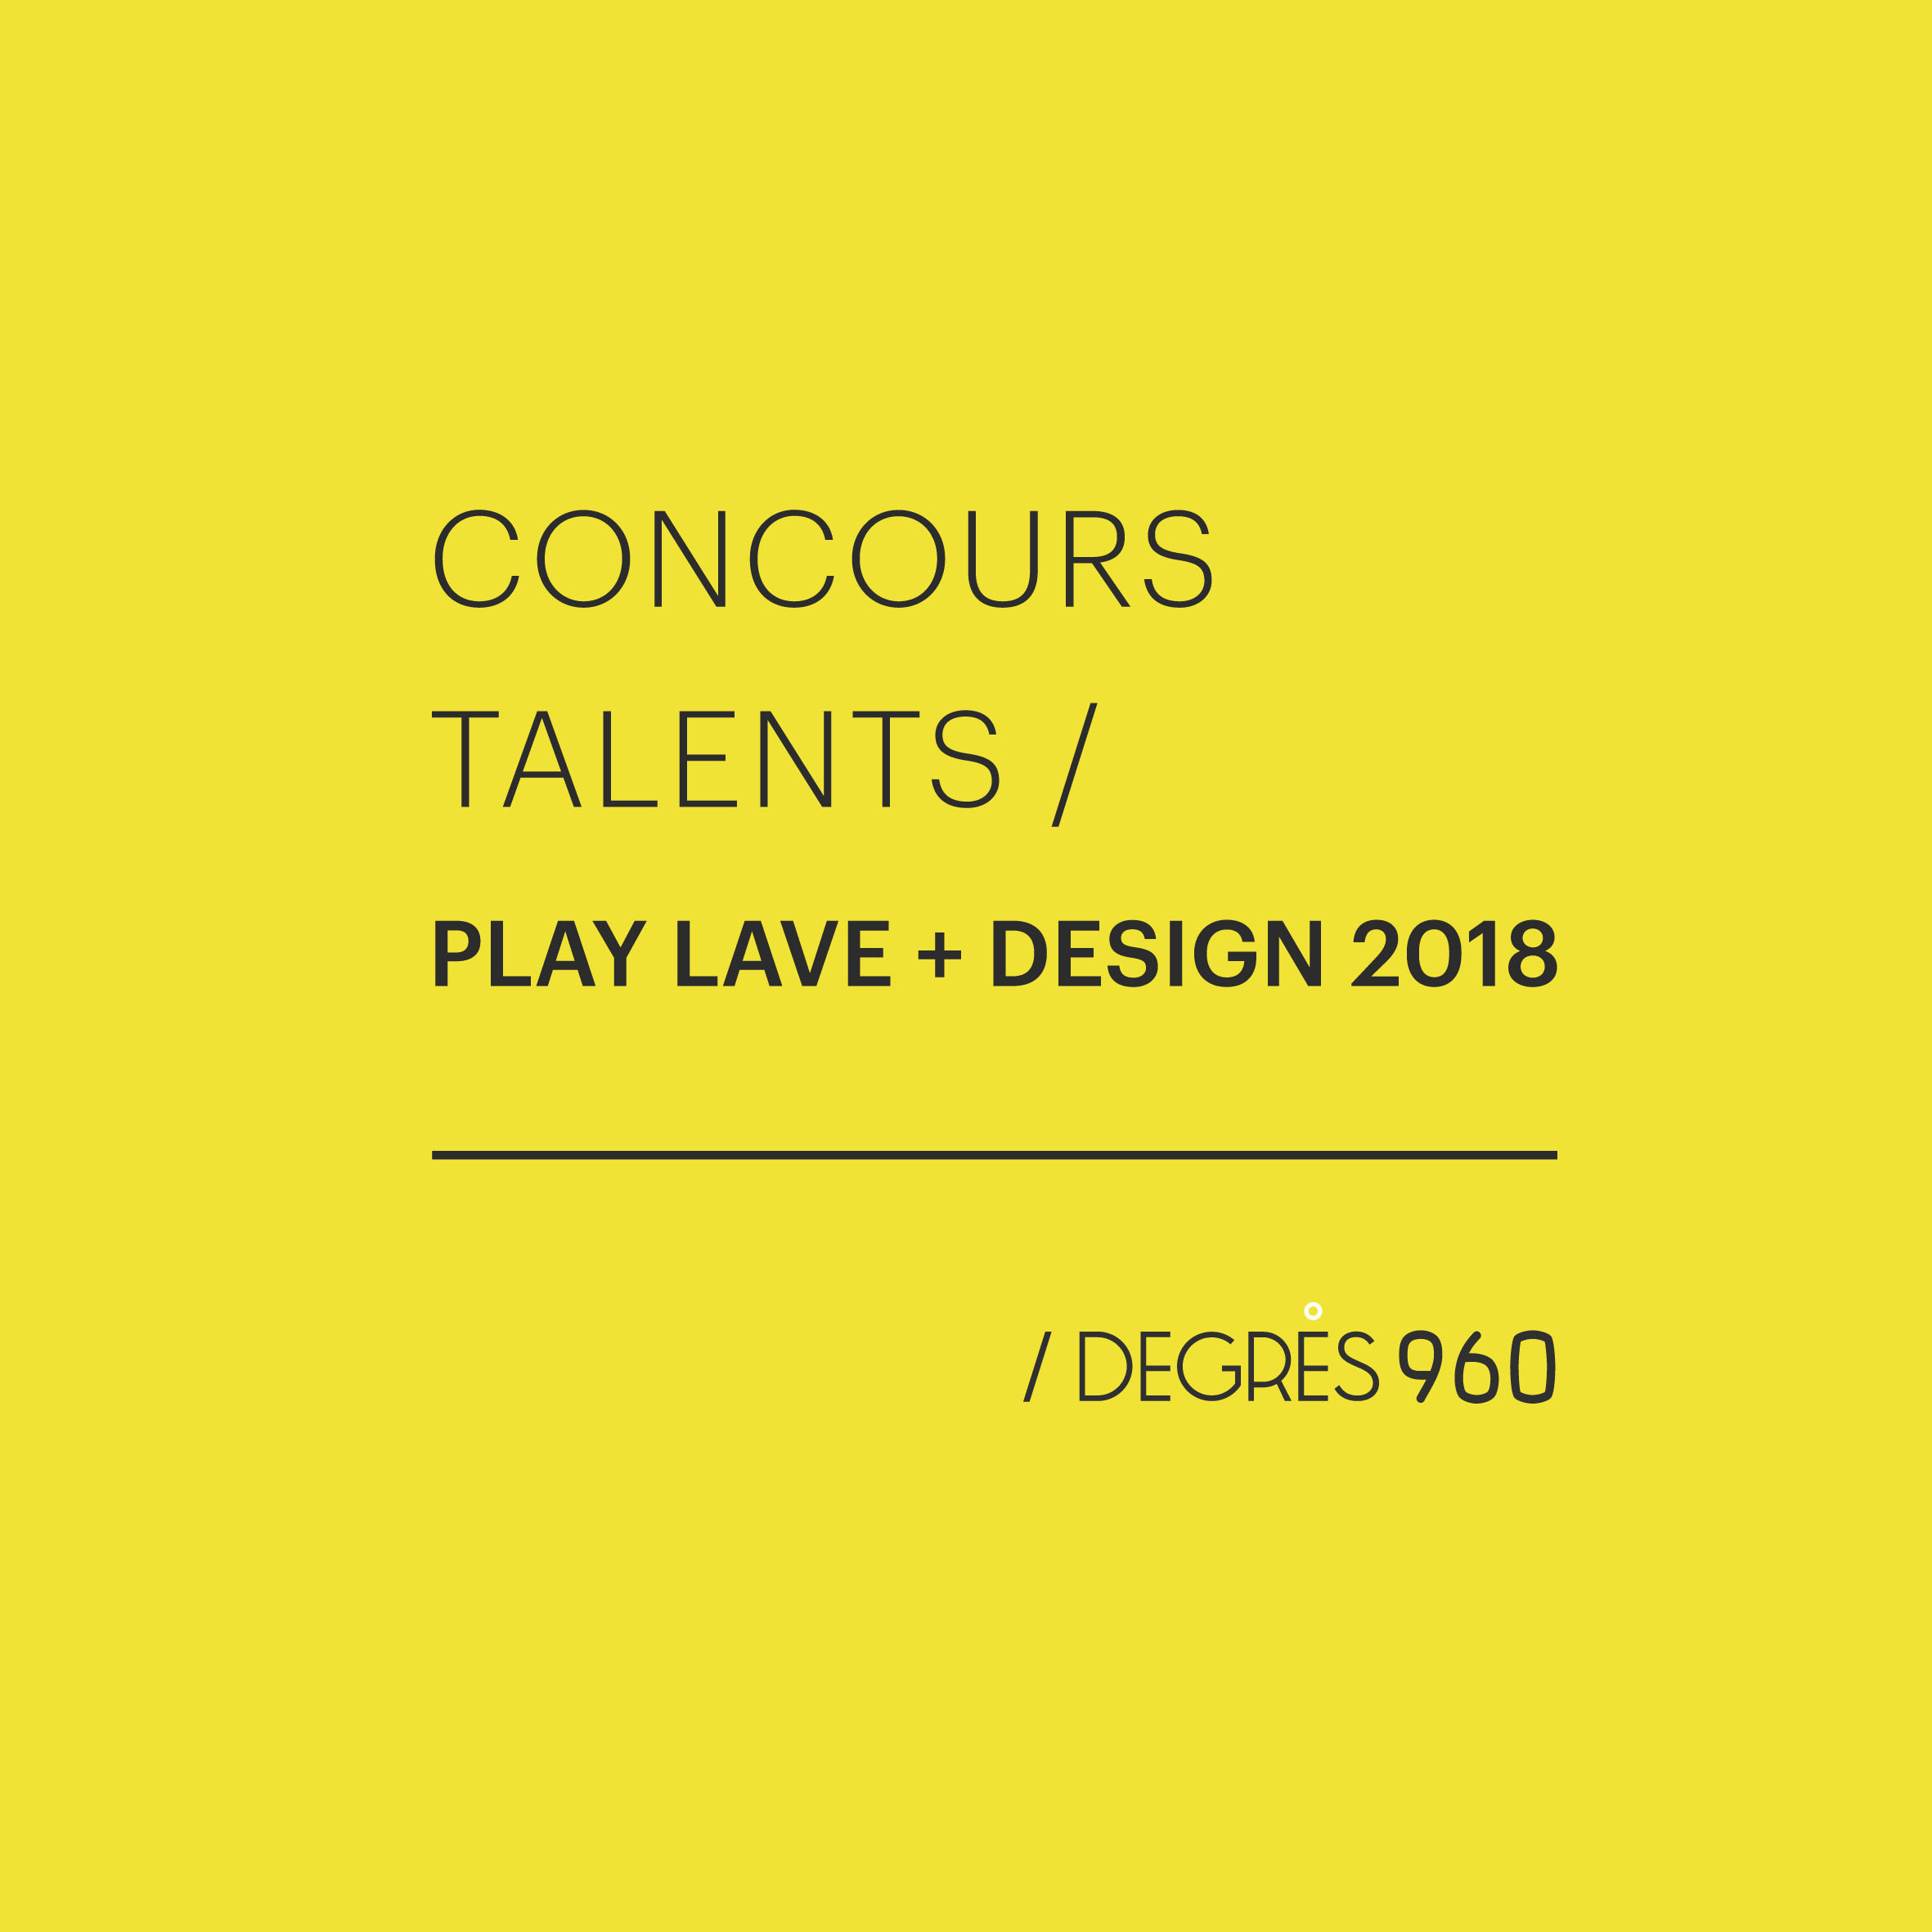 Appel à projets : concours talents Play Lave + Design 2018